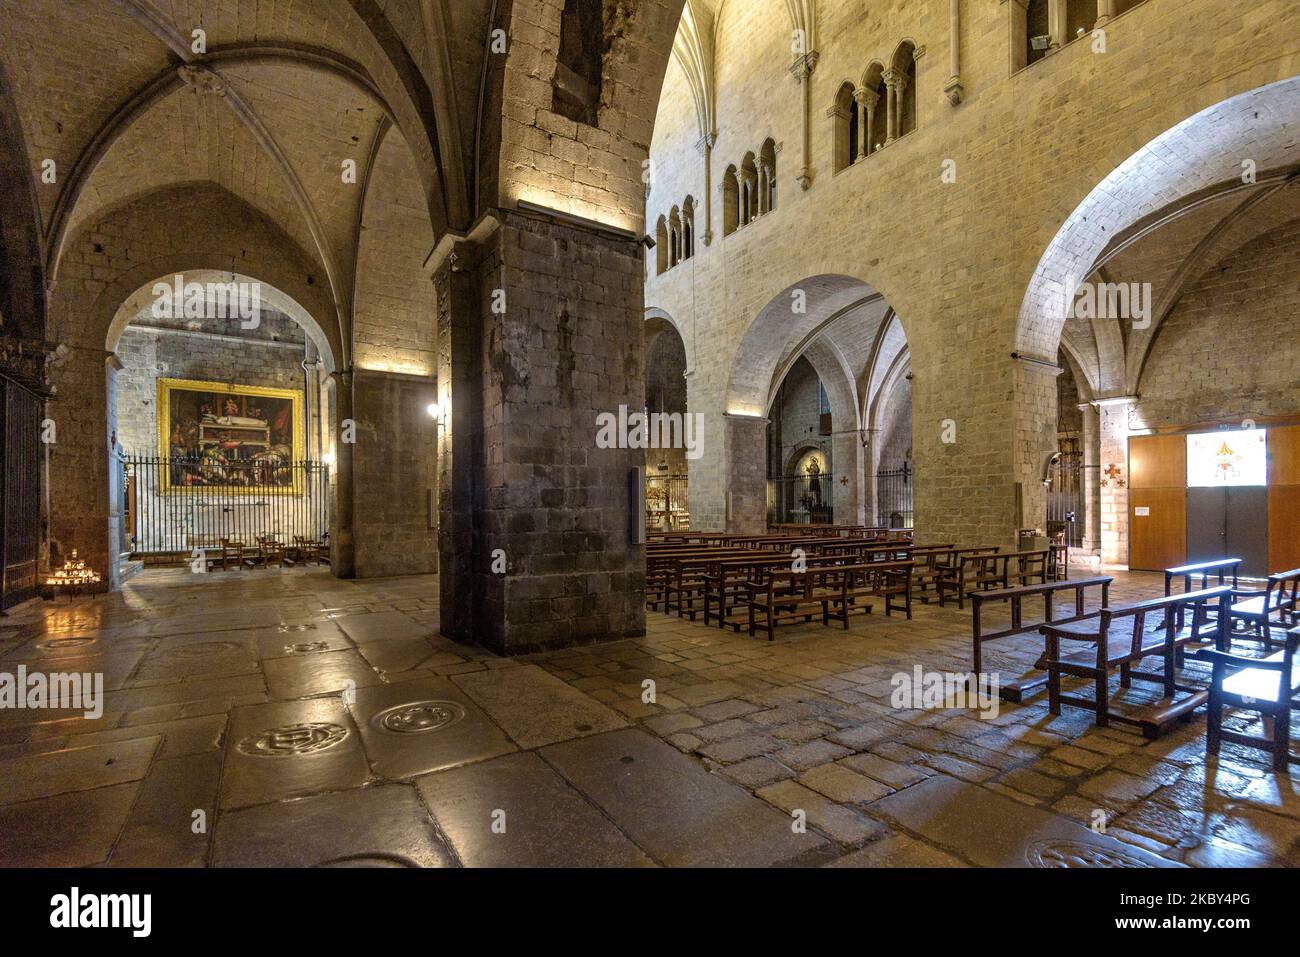 Interior of the Sant Feliu basilica in Girona (Catalonia, Spain) ESP: Interior de la basílica de Sant Feliu de Gerona (Cataluña, España) Stock Photo